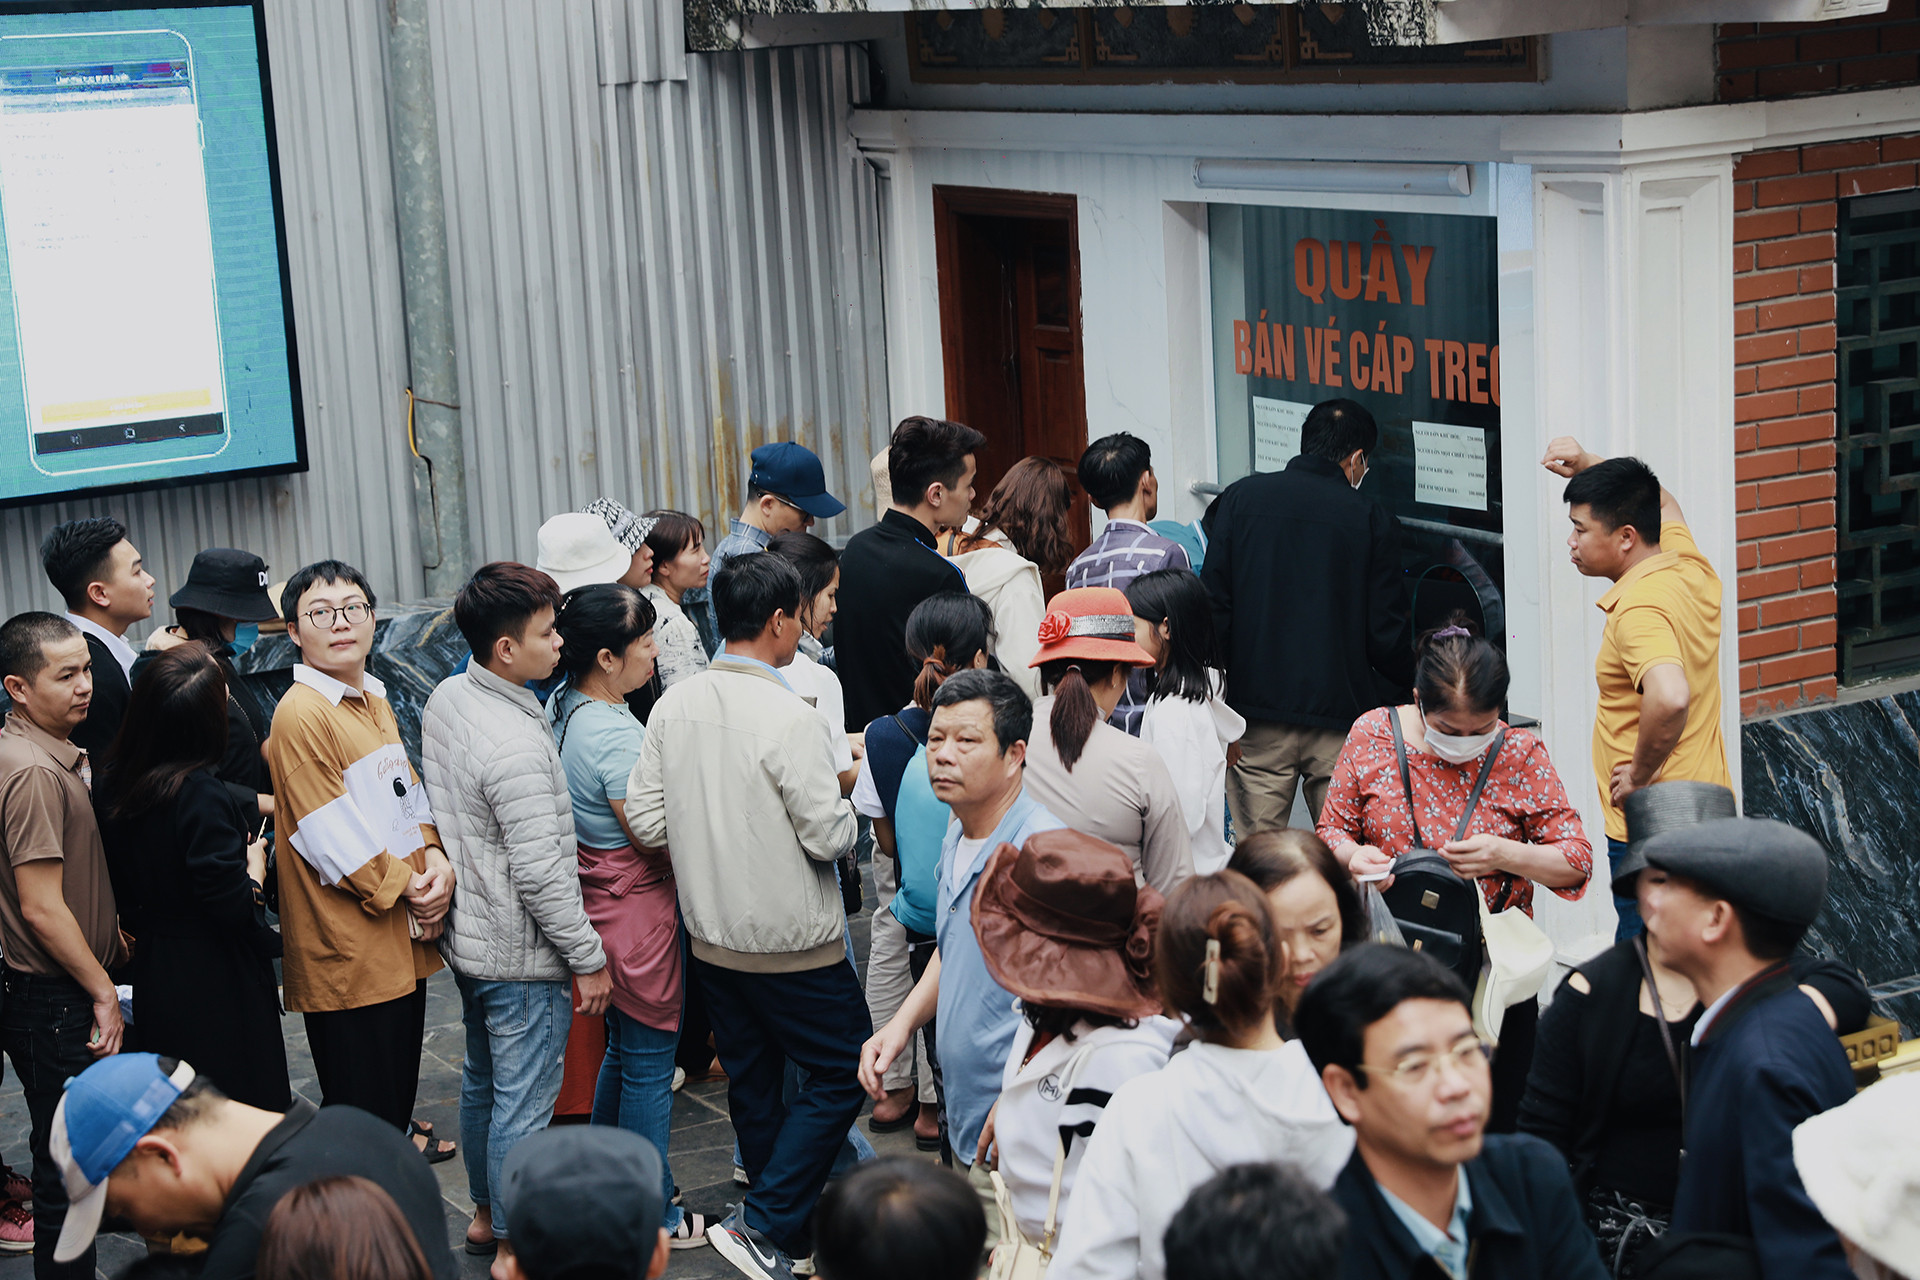 Hàng chục nghìn người cực nhọc chen lấn lên cáp treo chùa Hương-4